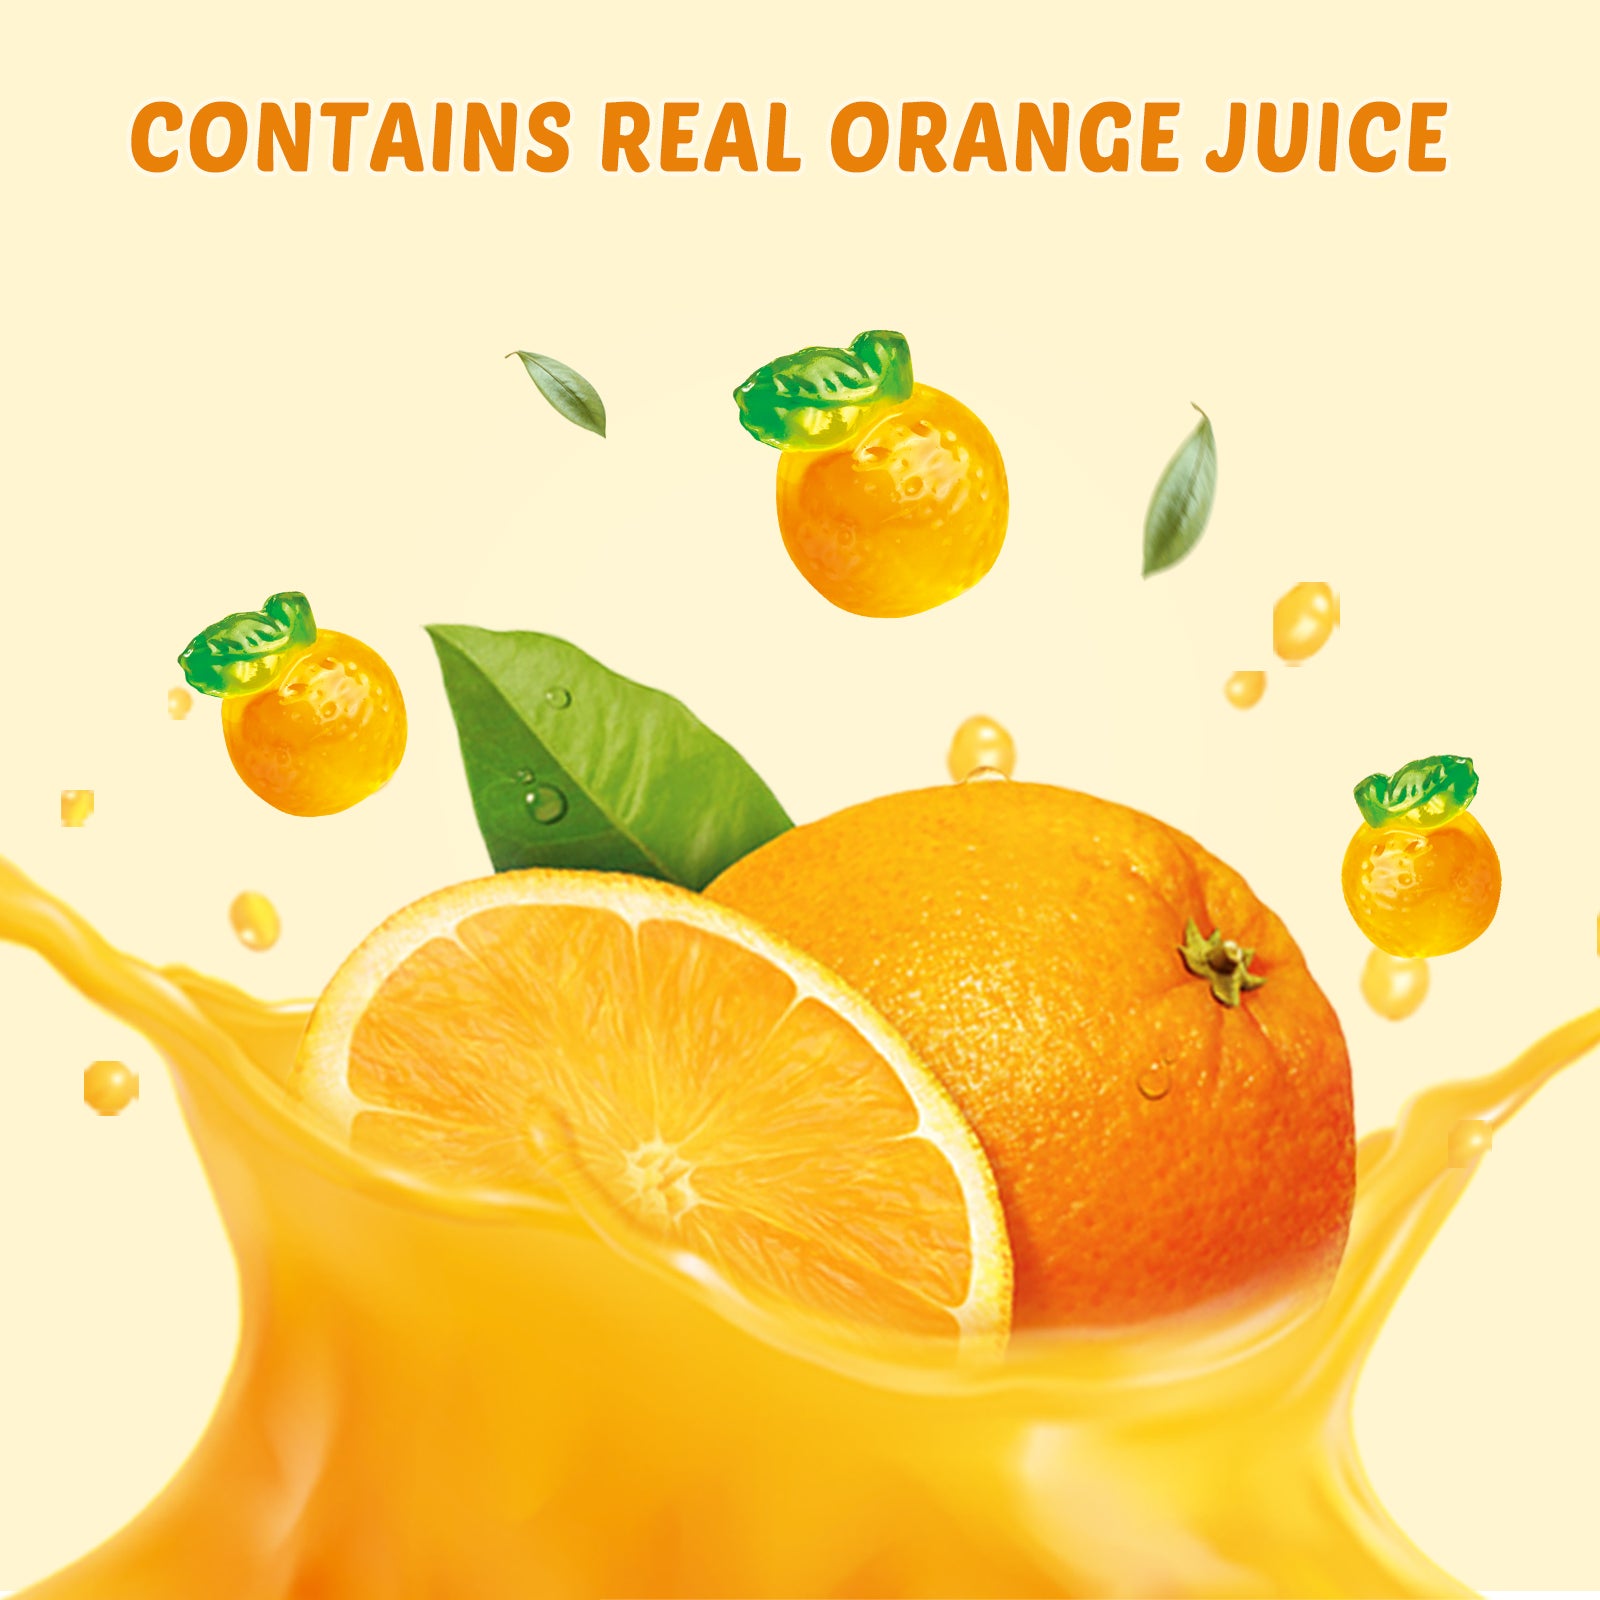 4D Fruit Gummy - Orange Burst Juice Filled